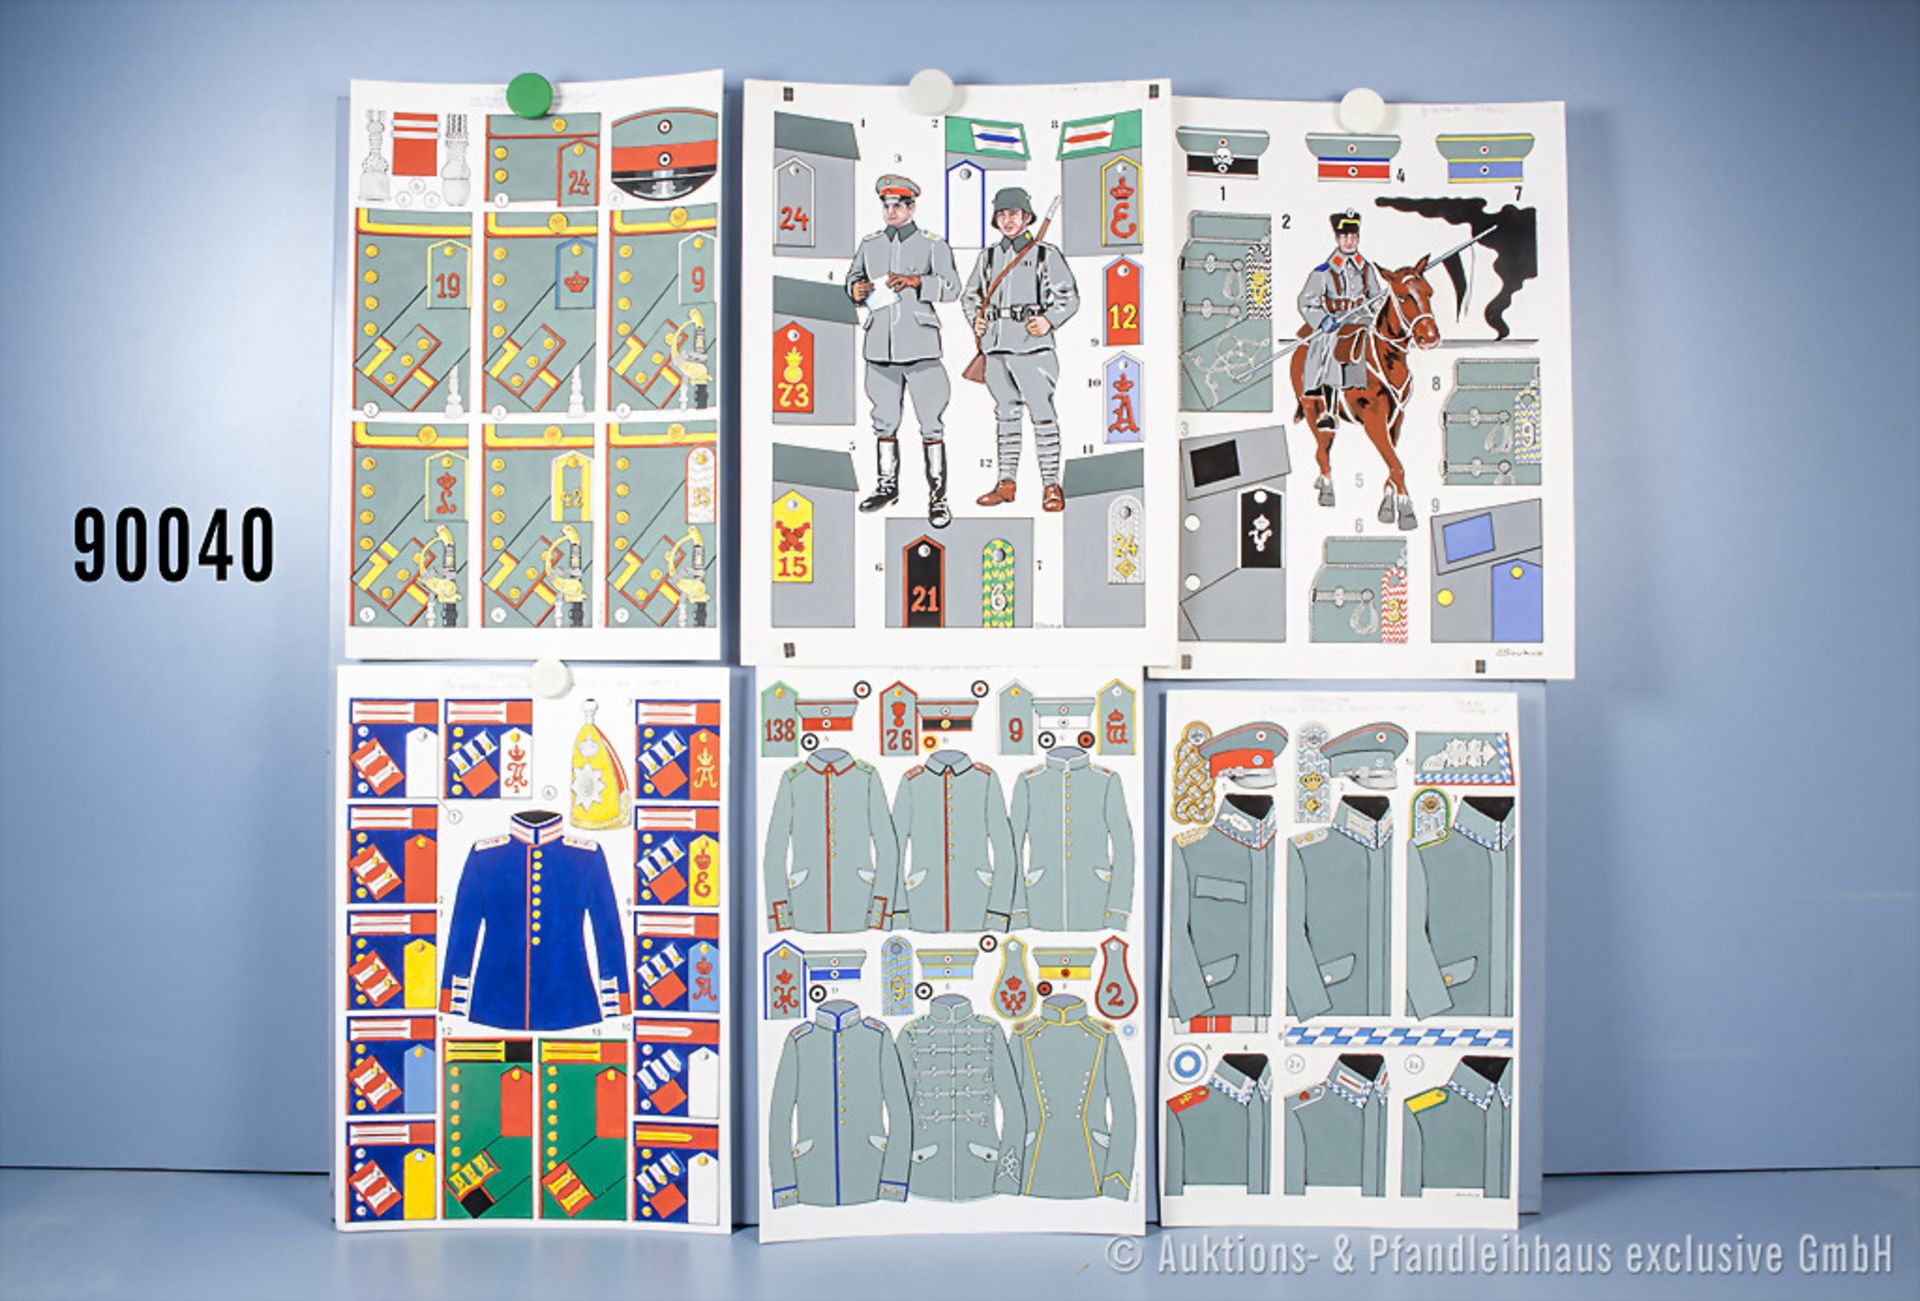 Konv. 12 originale überwiegend farbige Zeichnungen zum Thema Uniformierung und Effekten ...